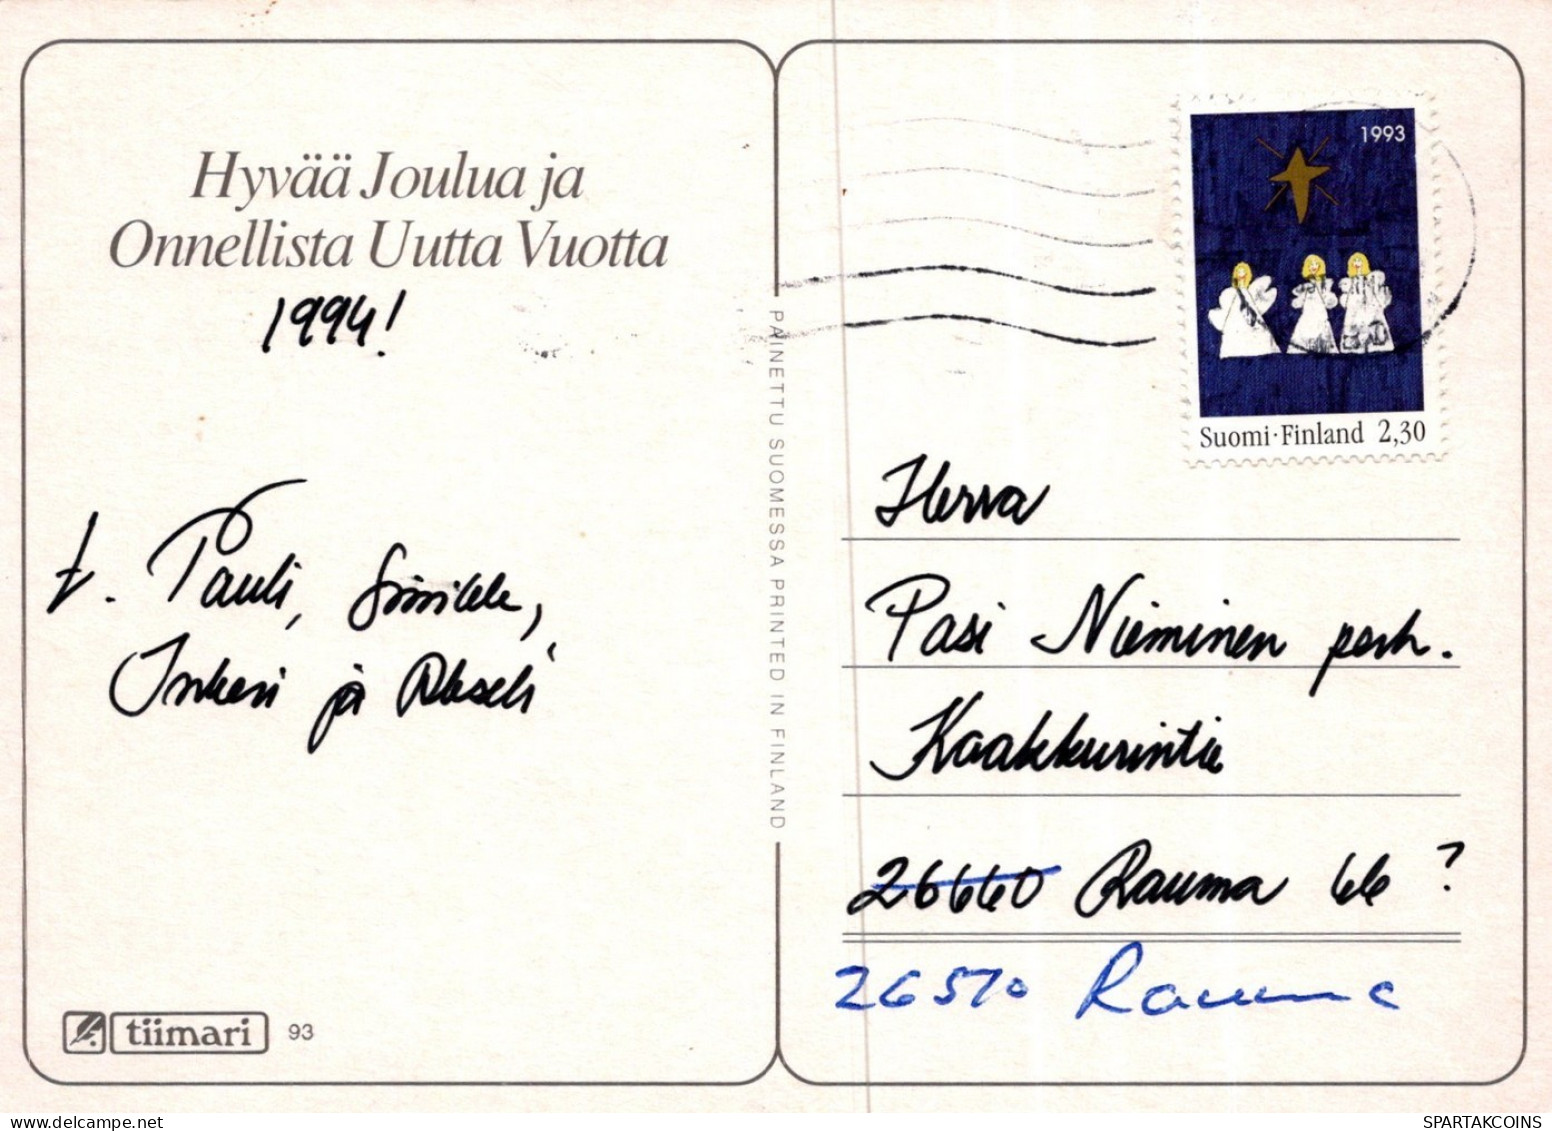 PÈRE NOËL ENFANT NOËL Fêtes Voeux Vintage Carte Postale CPSM #PAK239.FR - Santa Claus